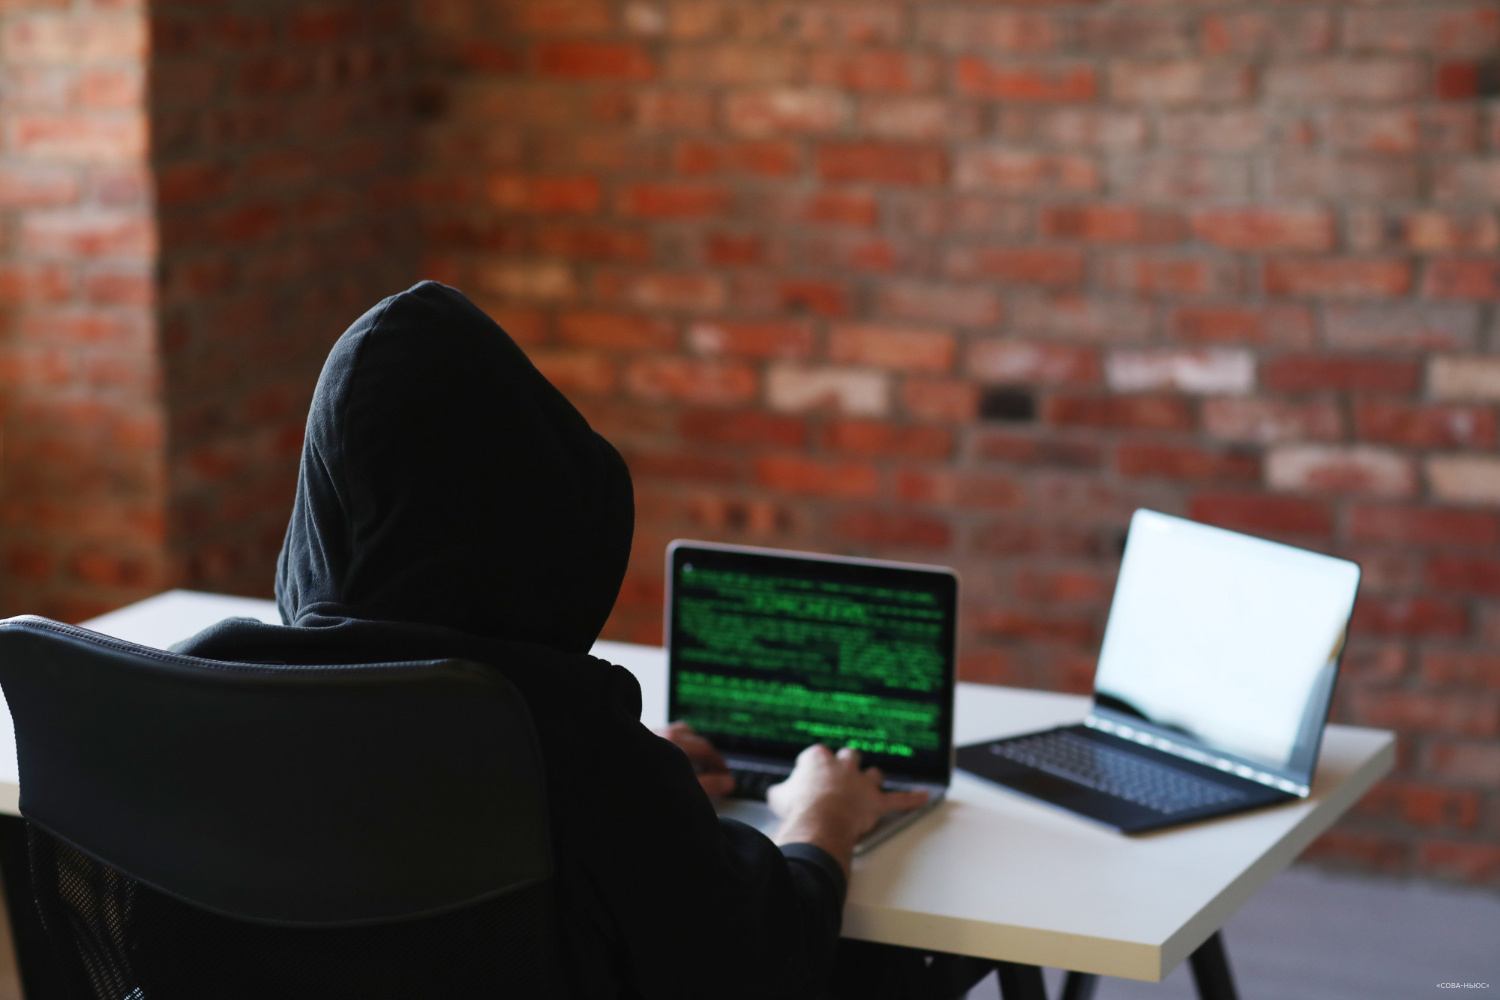 Более 60% российских компаний сталкиваются с угрозами кибербезопасности от своих системных администраторов